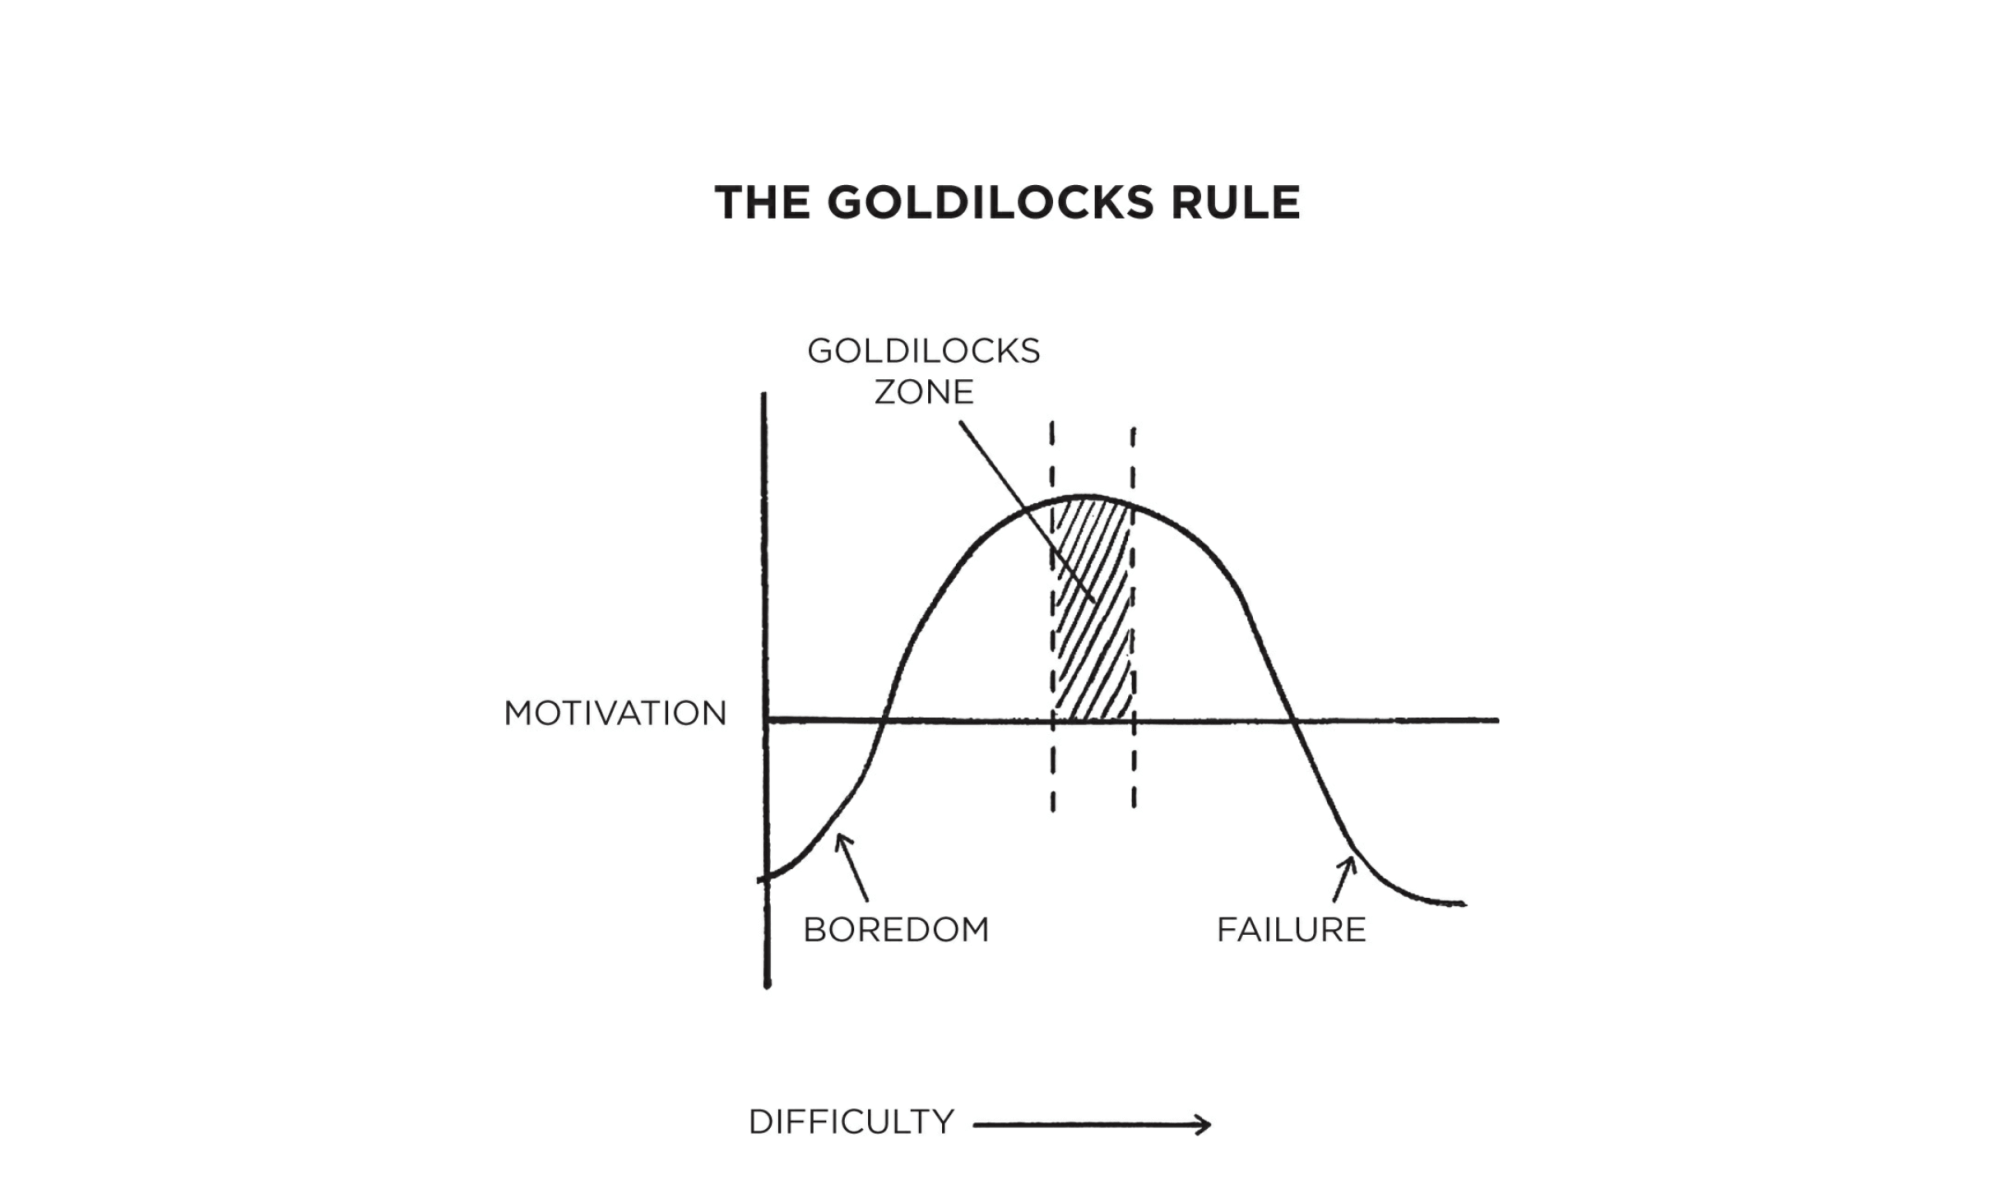 The goldilocks rule